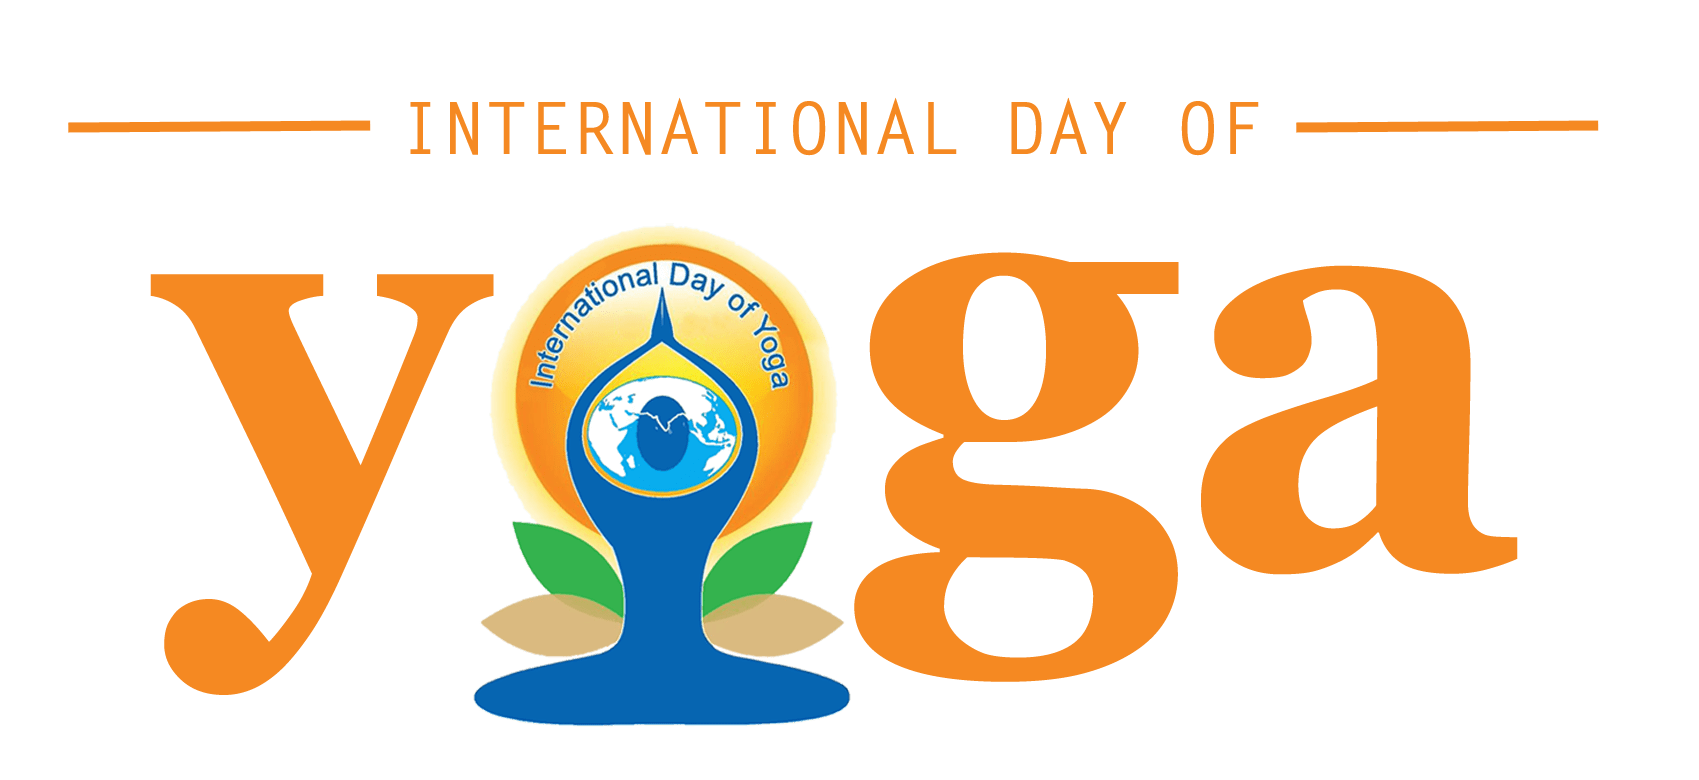 तीसरा अंतरराष्ट्रीय योग दिवस